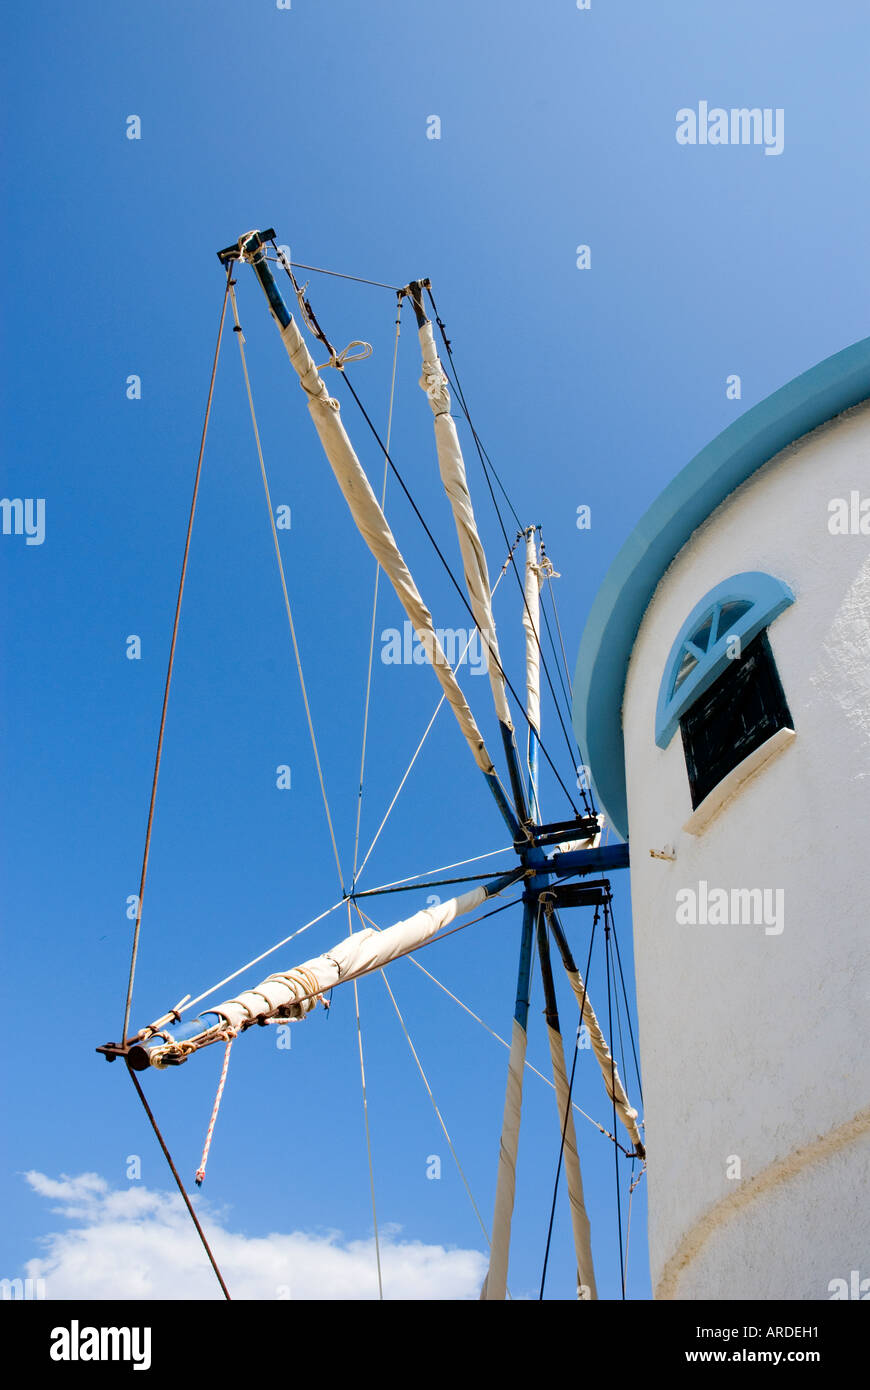 Molino griego, Zakynthos, Grecia Foto de stock